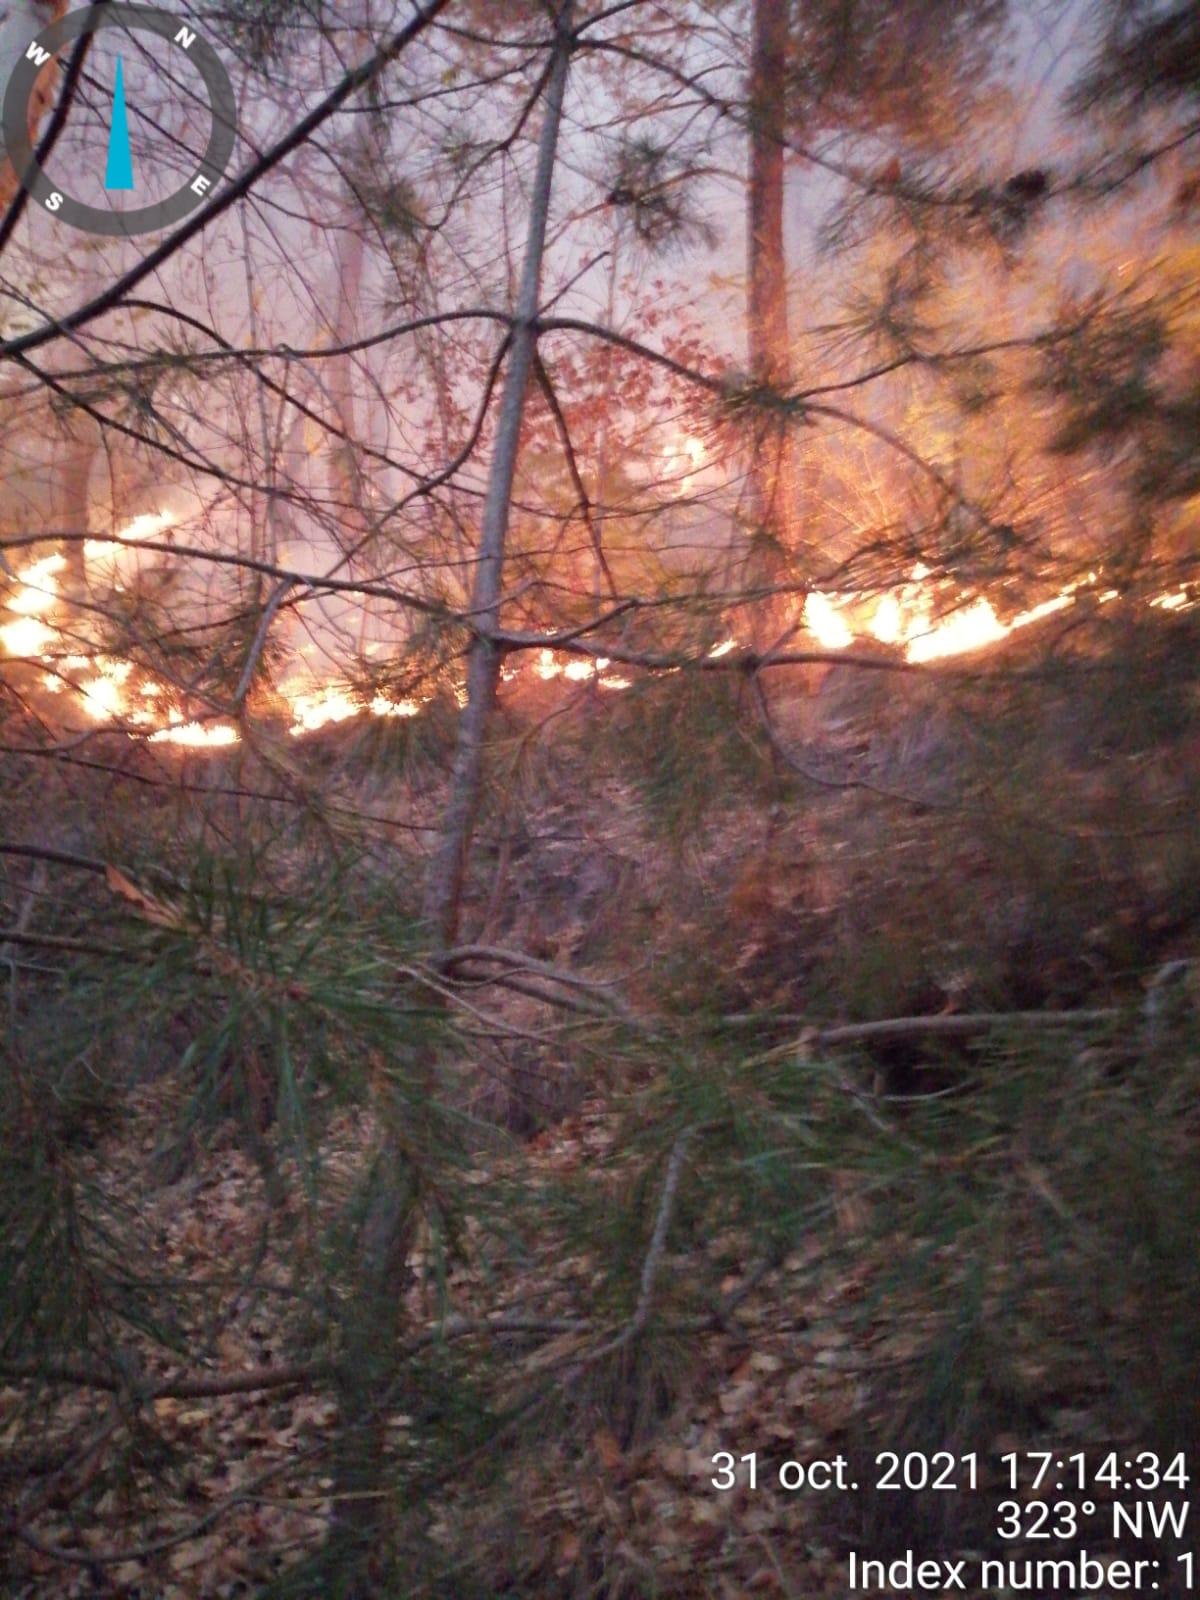 Incendiu într-o pădure din Bacău